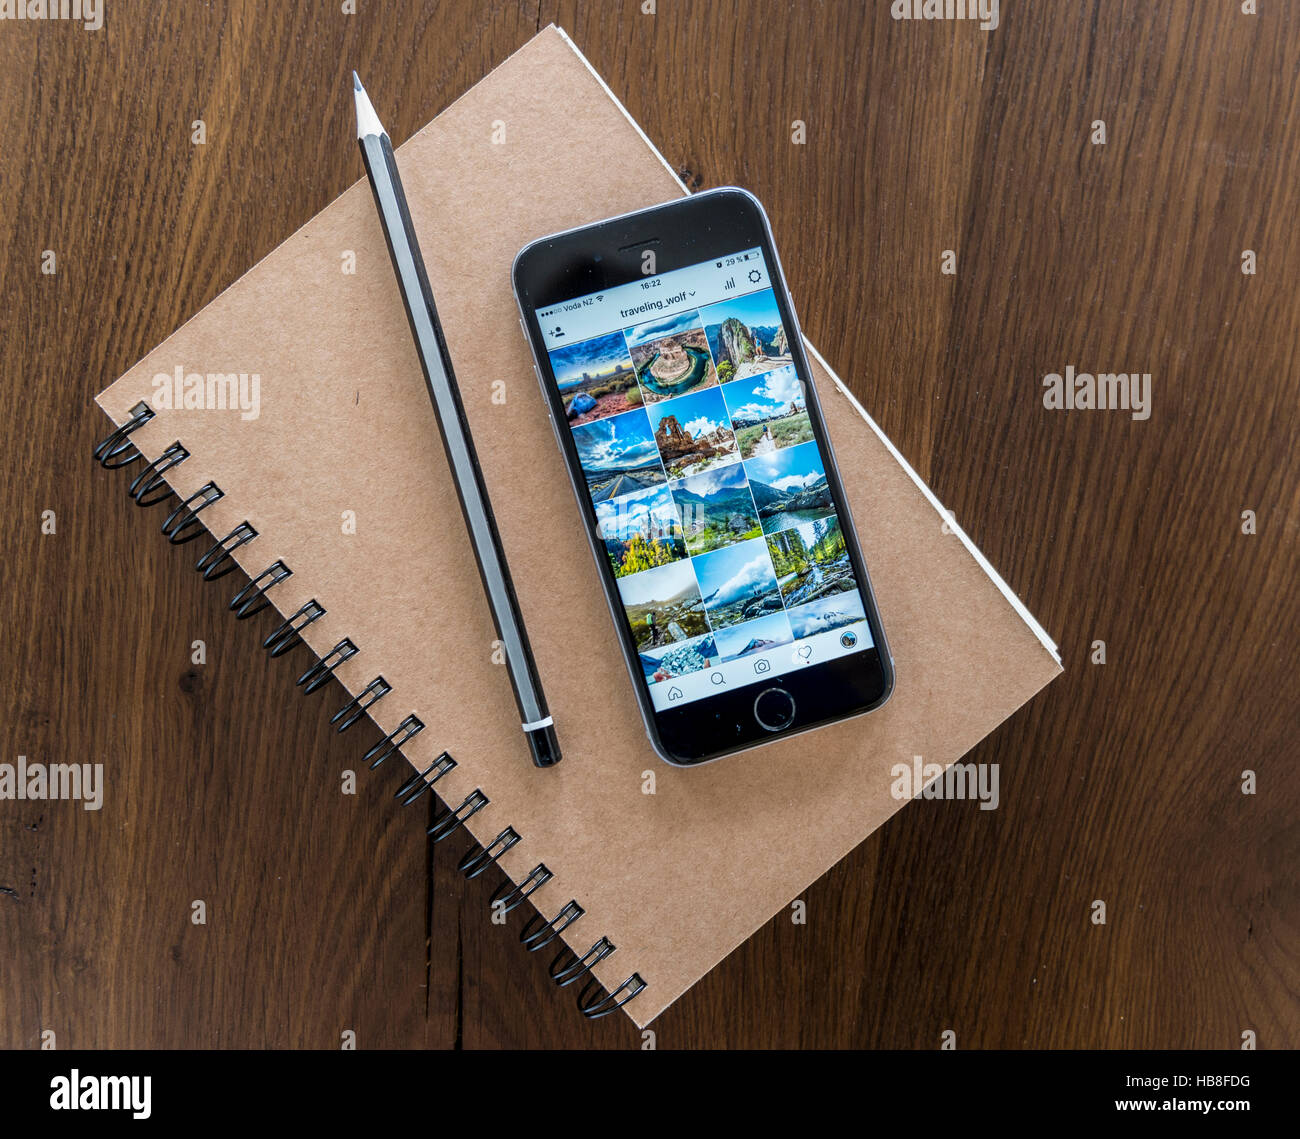 Instagram galleria foto visualizzata sulla schermata dello smartphone, notebook e penna su una tavola di legno Foto Stock